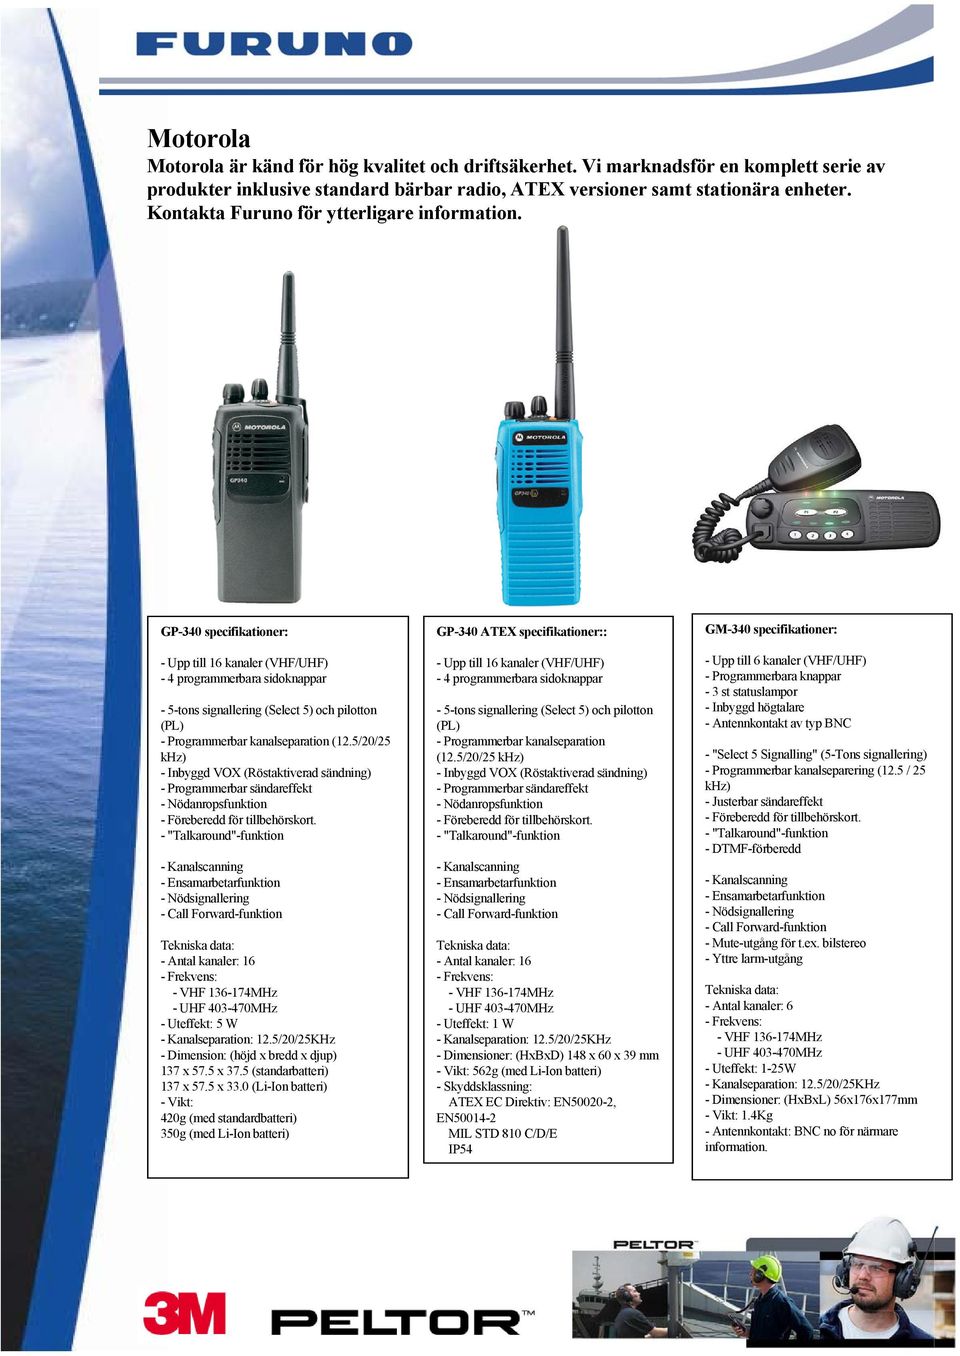 GP-340 specifikationer: - Upp till 16 kanaler (VHF/UHF) - 4 programmerbara sidoknappar - 5-tons signallering (Select 5) och pilotton (PL) - Programmerbar kanalseparation (12.